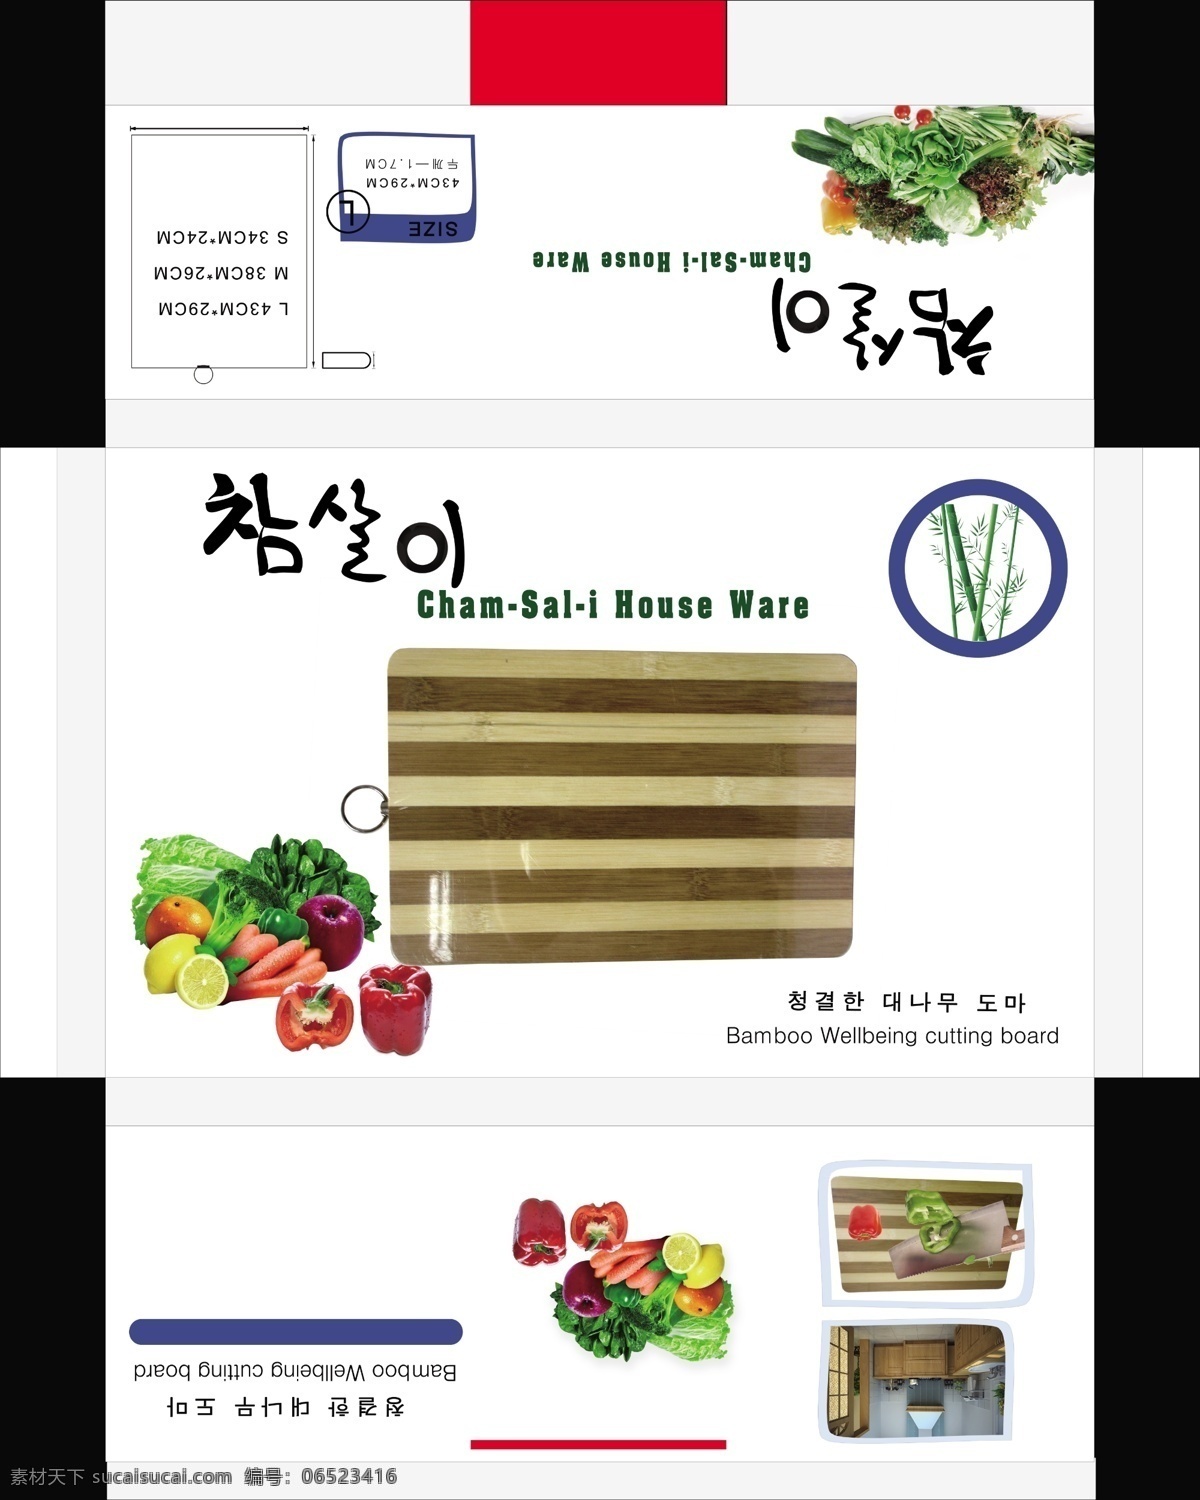 出口 韩国 切菜板 彩盒包装 psd分层图 包装设计 厨房用品 广告设计模板 水果 源文件 竹子 psd源文件